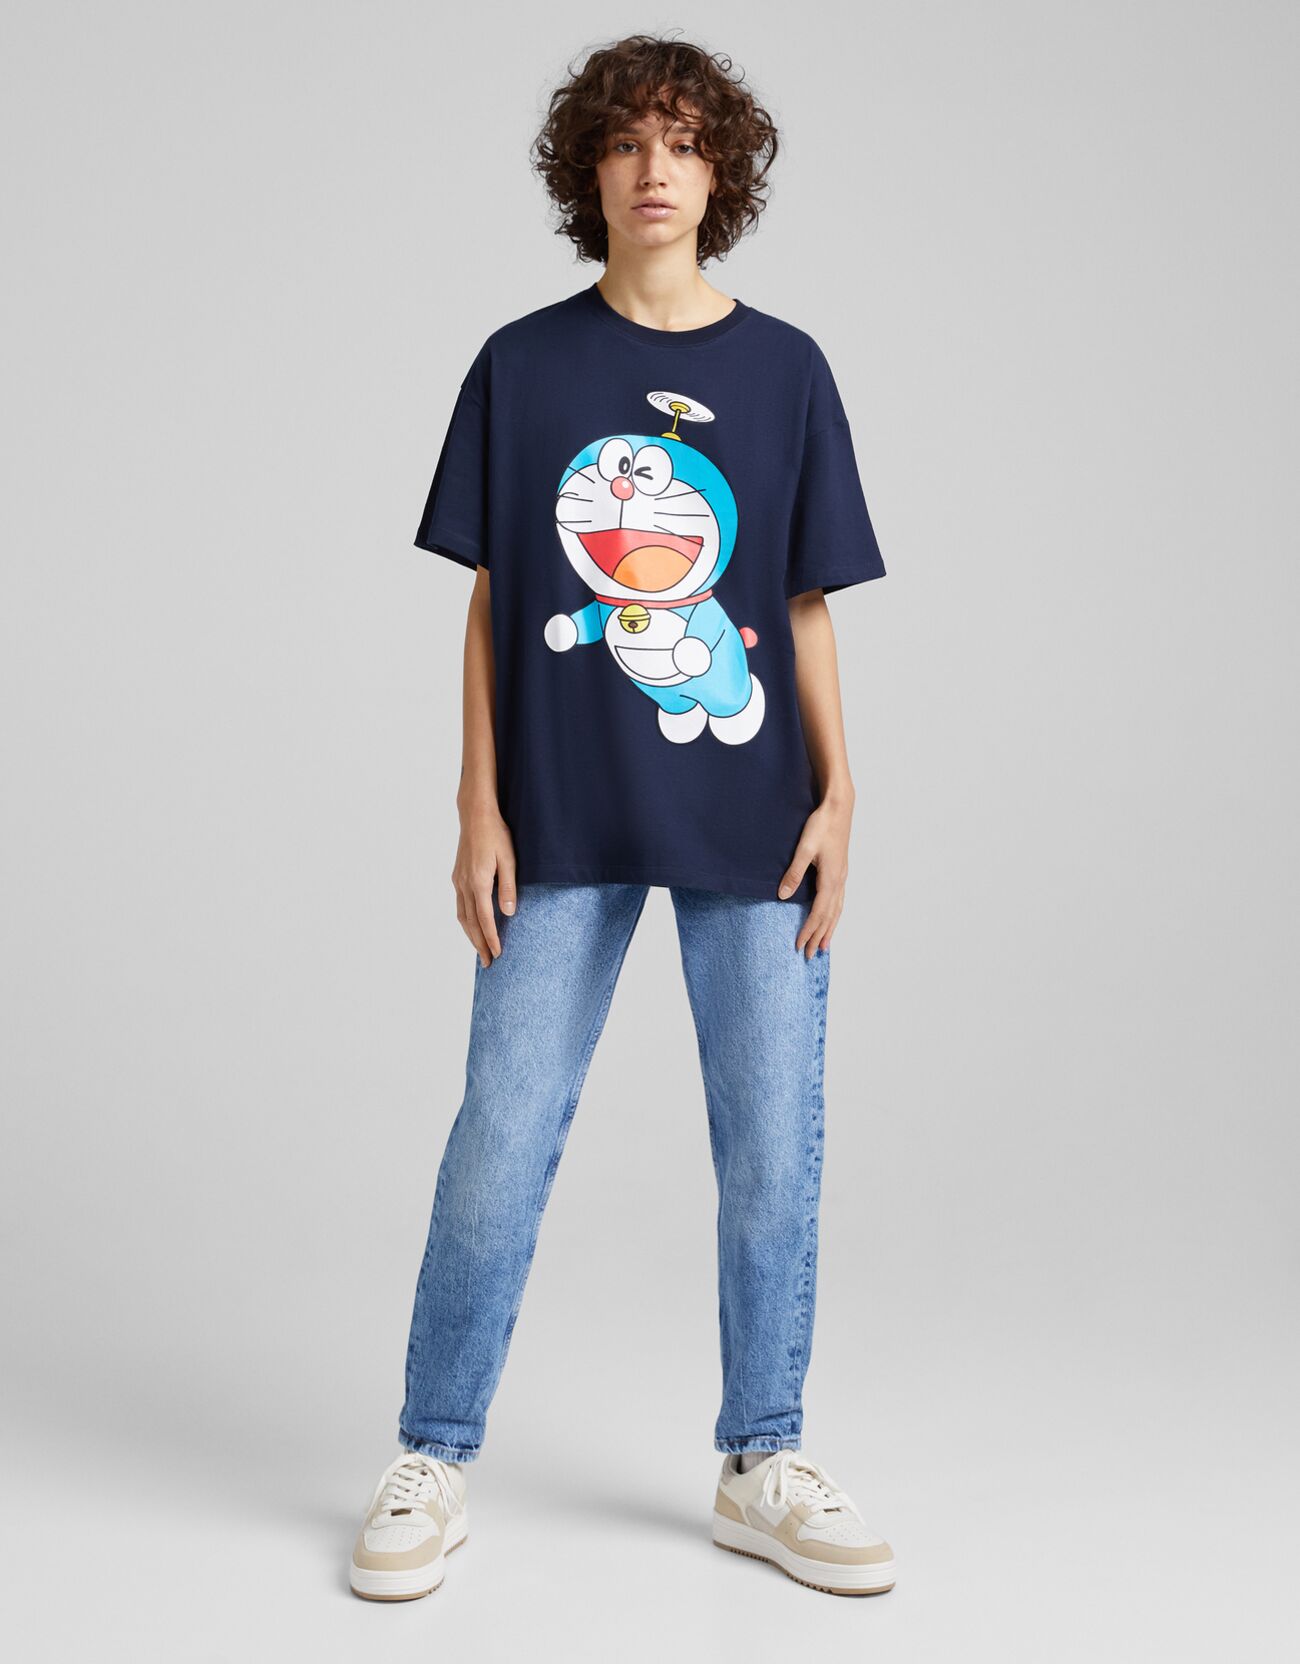 Bershka Camiseta Manga Corta Doraemon Print Mujer S Marino